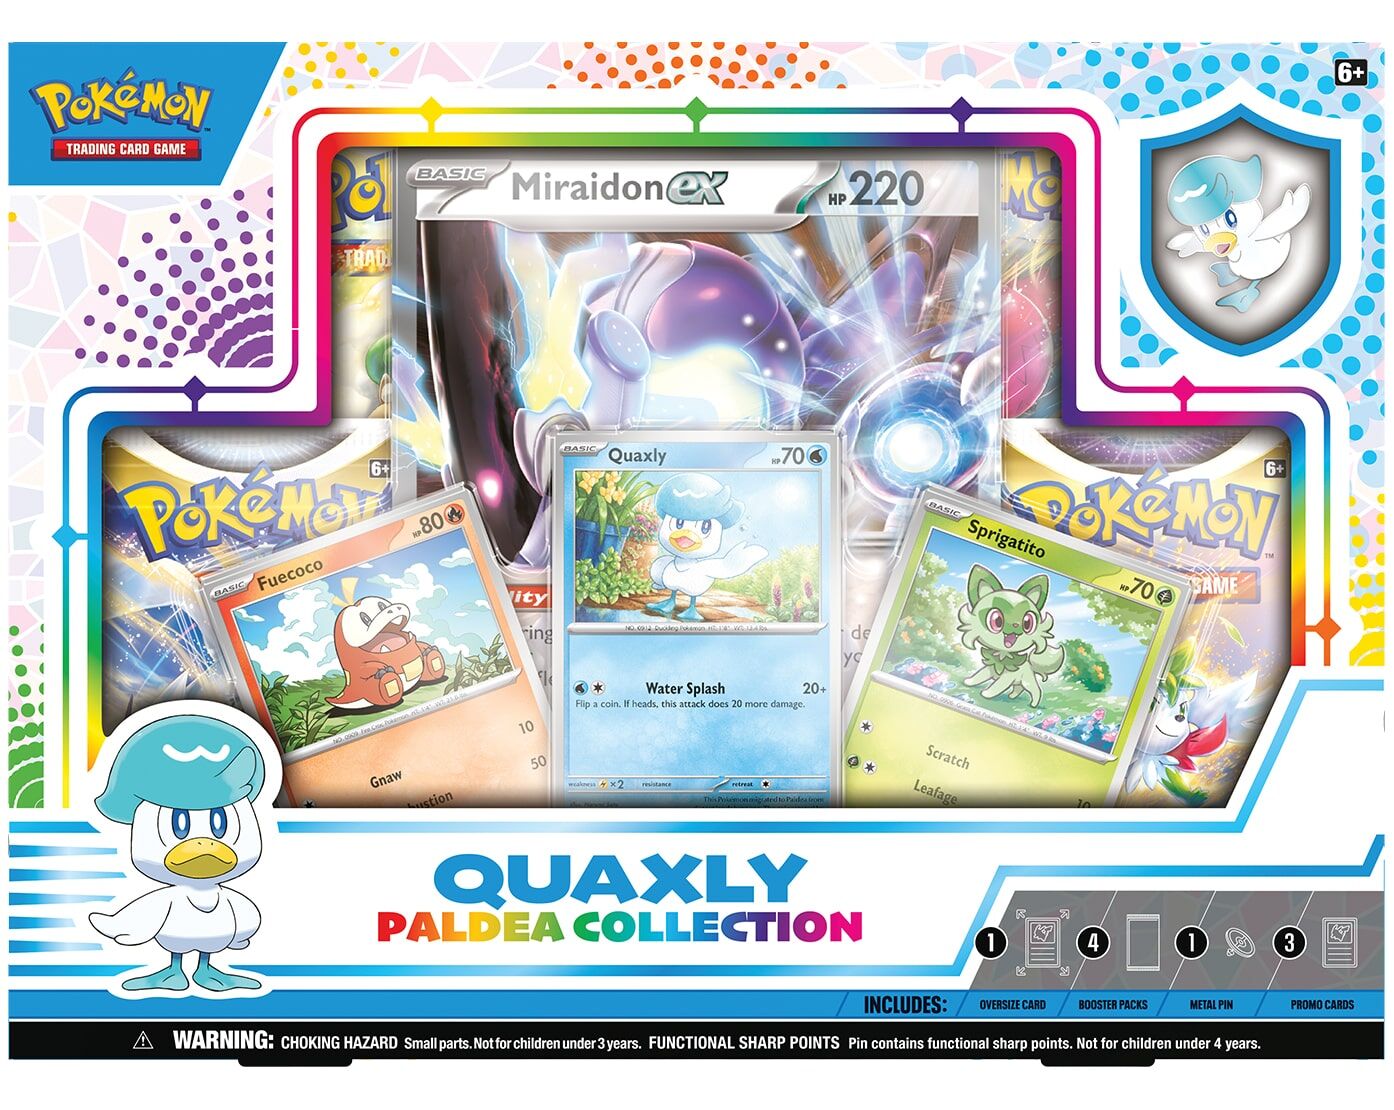 Pokémon Quaxly Paldea Collection Box - EN